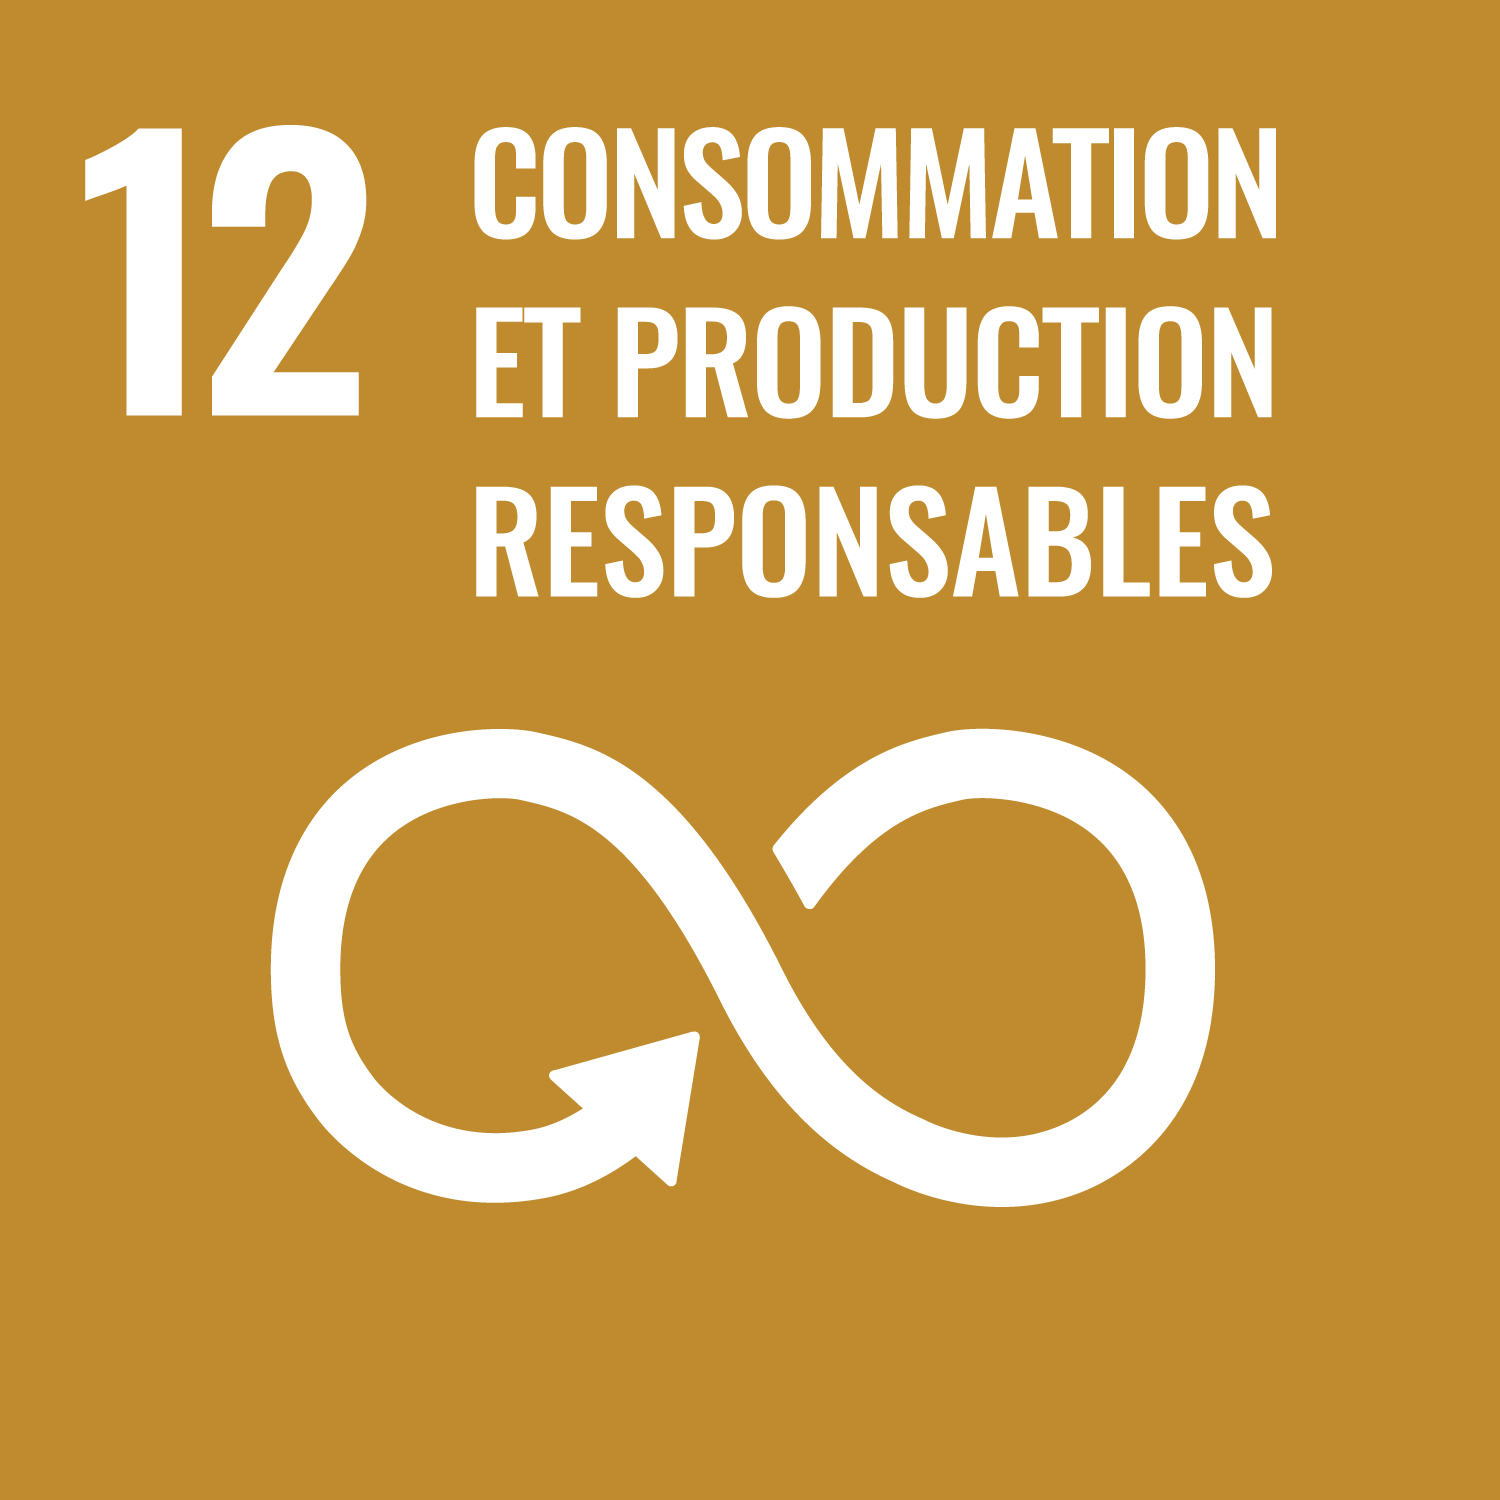 Objectif de développement durable 12: Consommation et production responsable;